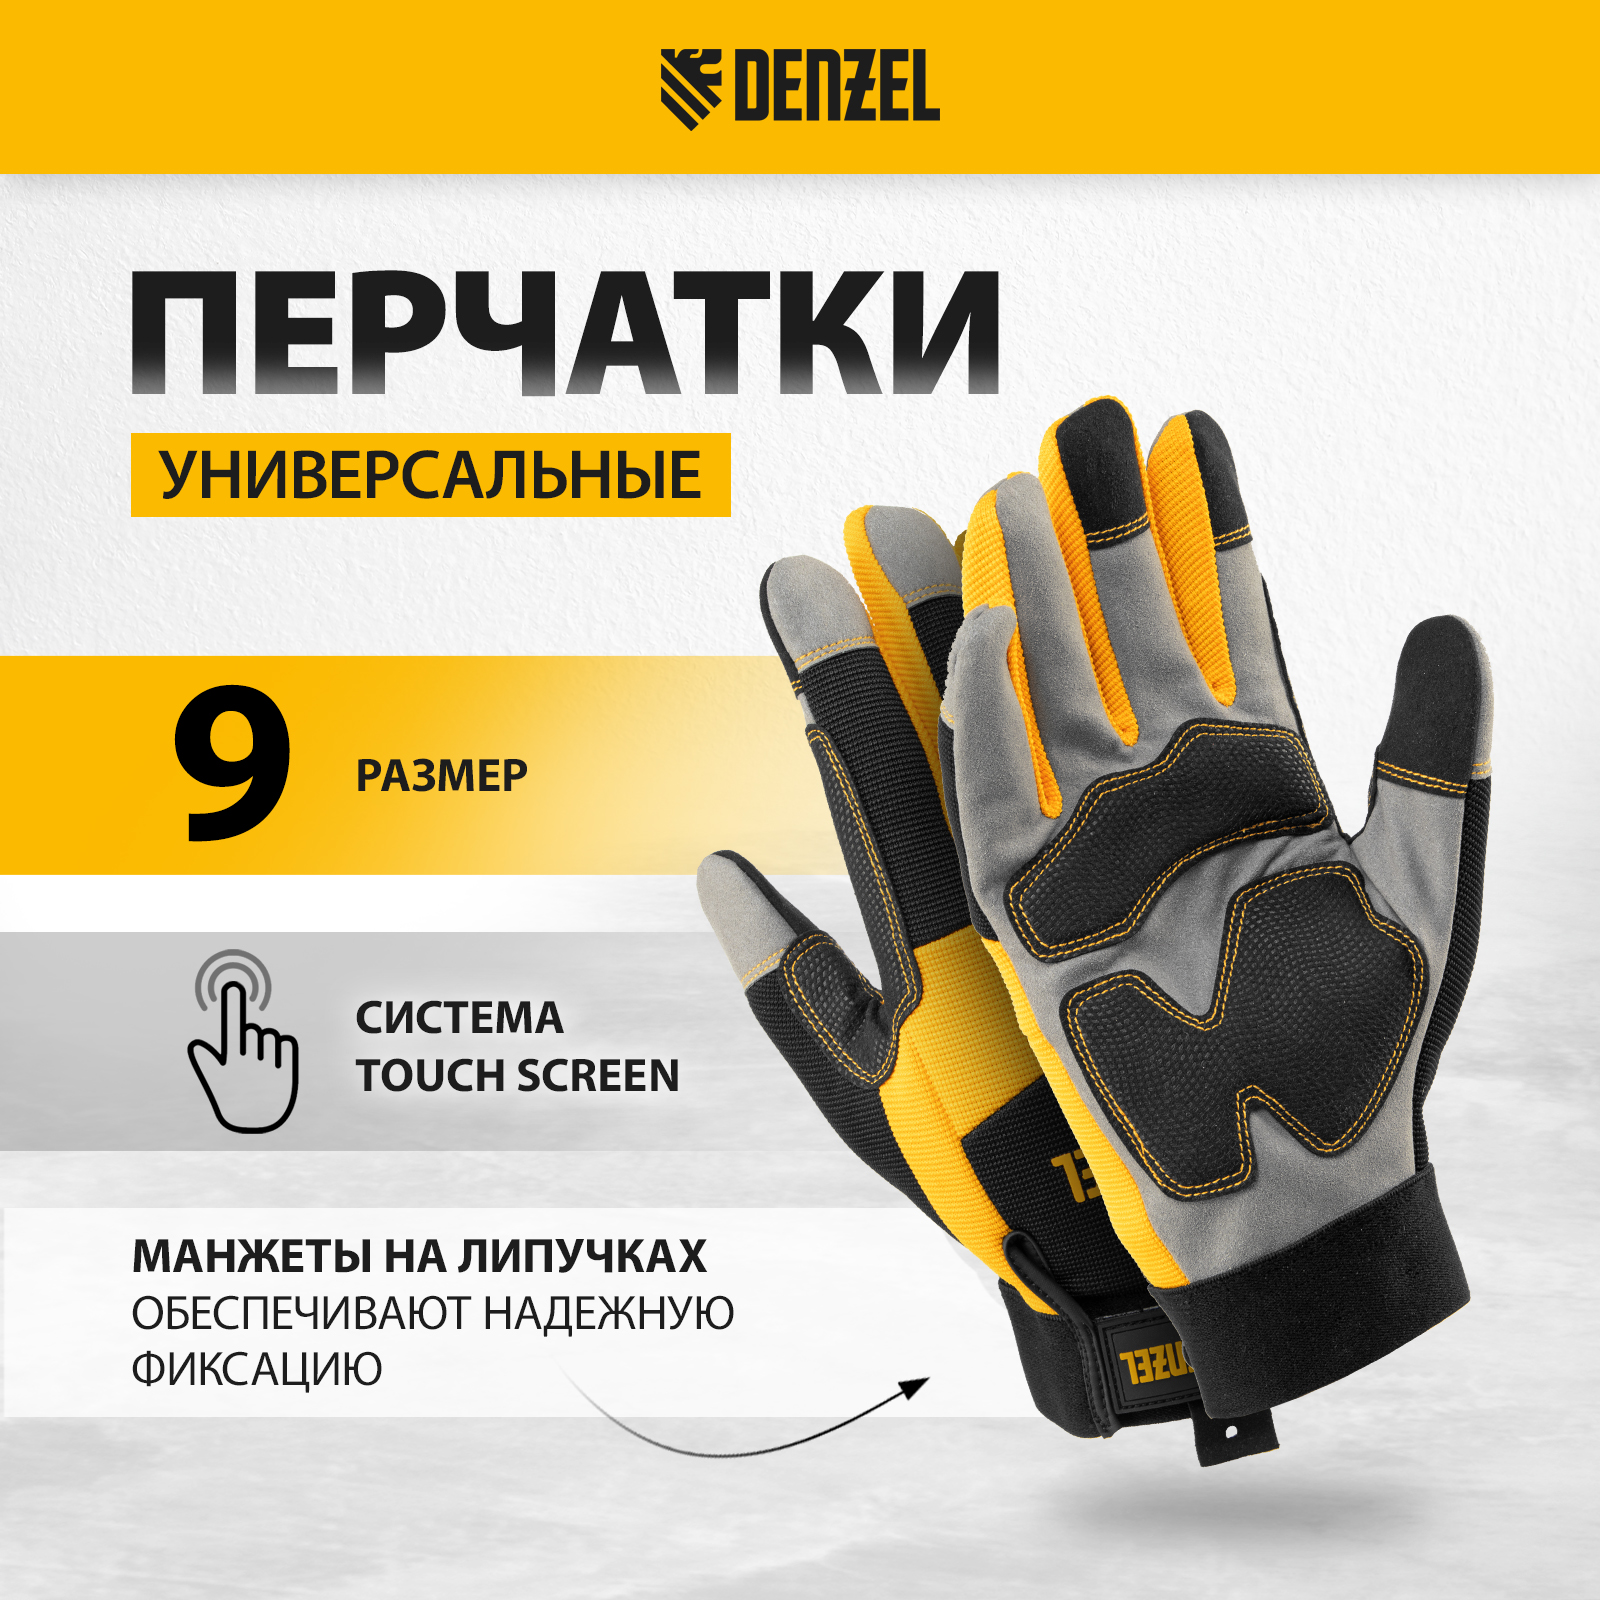 Перчатки универсальные DENZEL усиленные размер 9 67990 универсальные перчатки truper